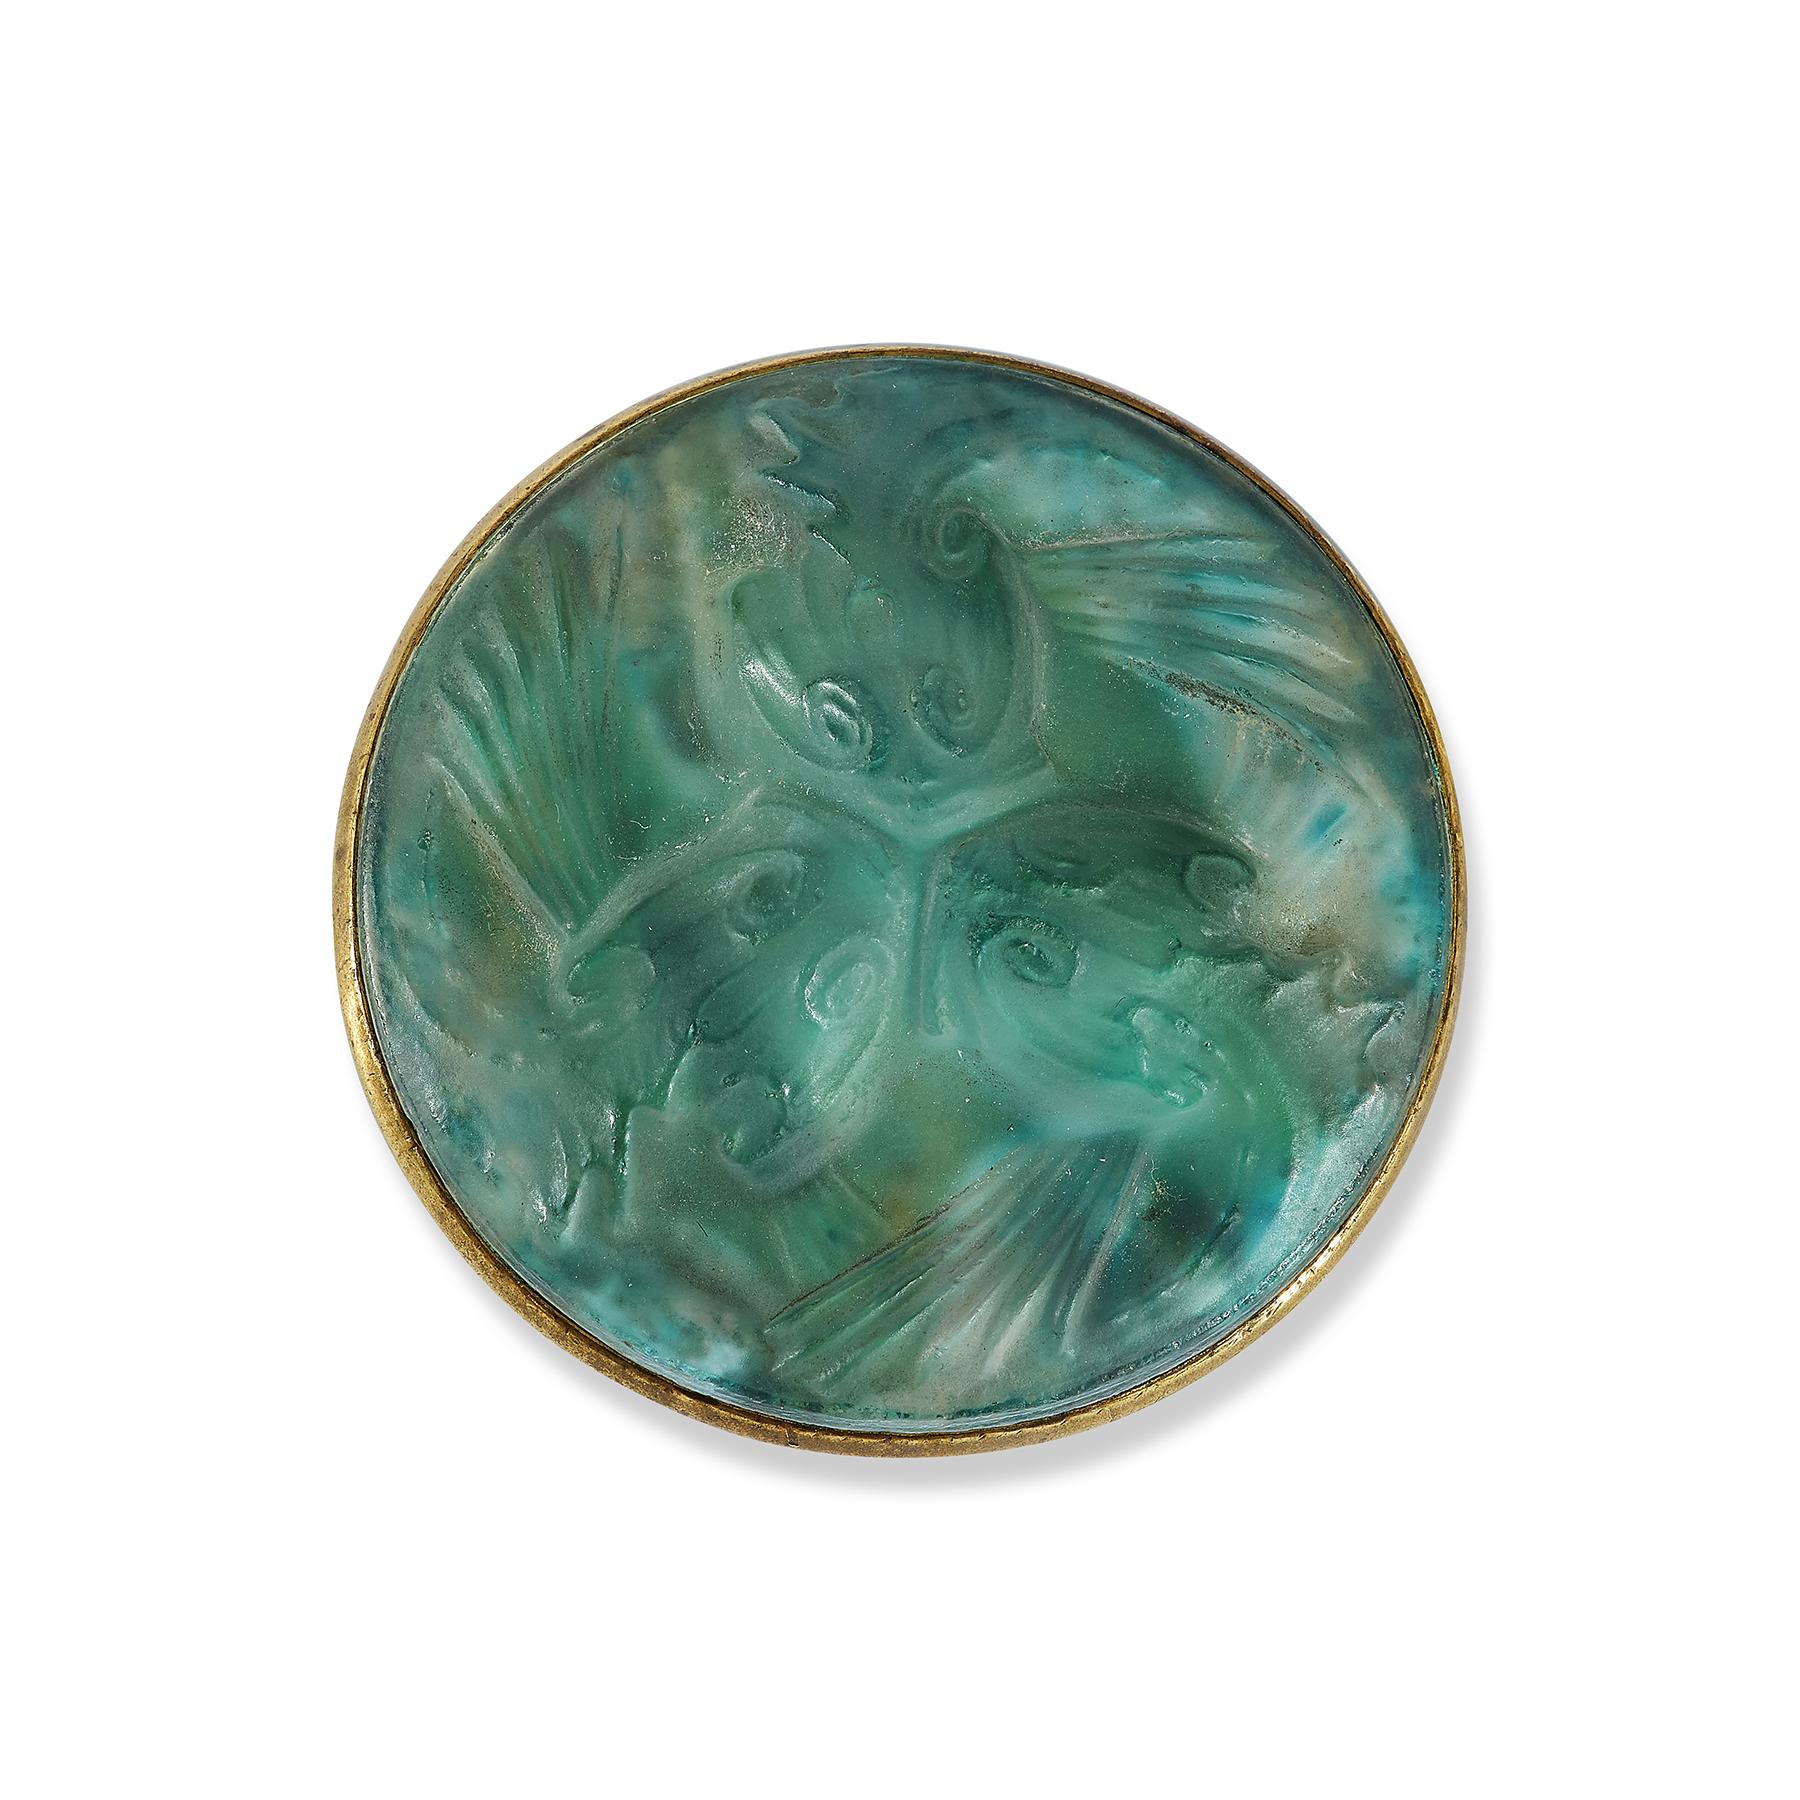 Lalique-Glasfisch-Brosche

Eine goldene Brosche mit grünem Glas besetzt

Signiert Lalique

Durchmesser: 1,75